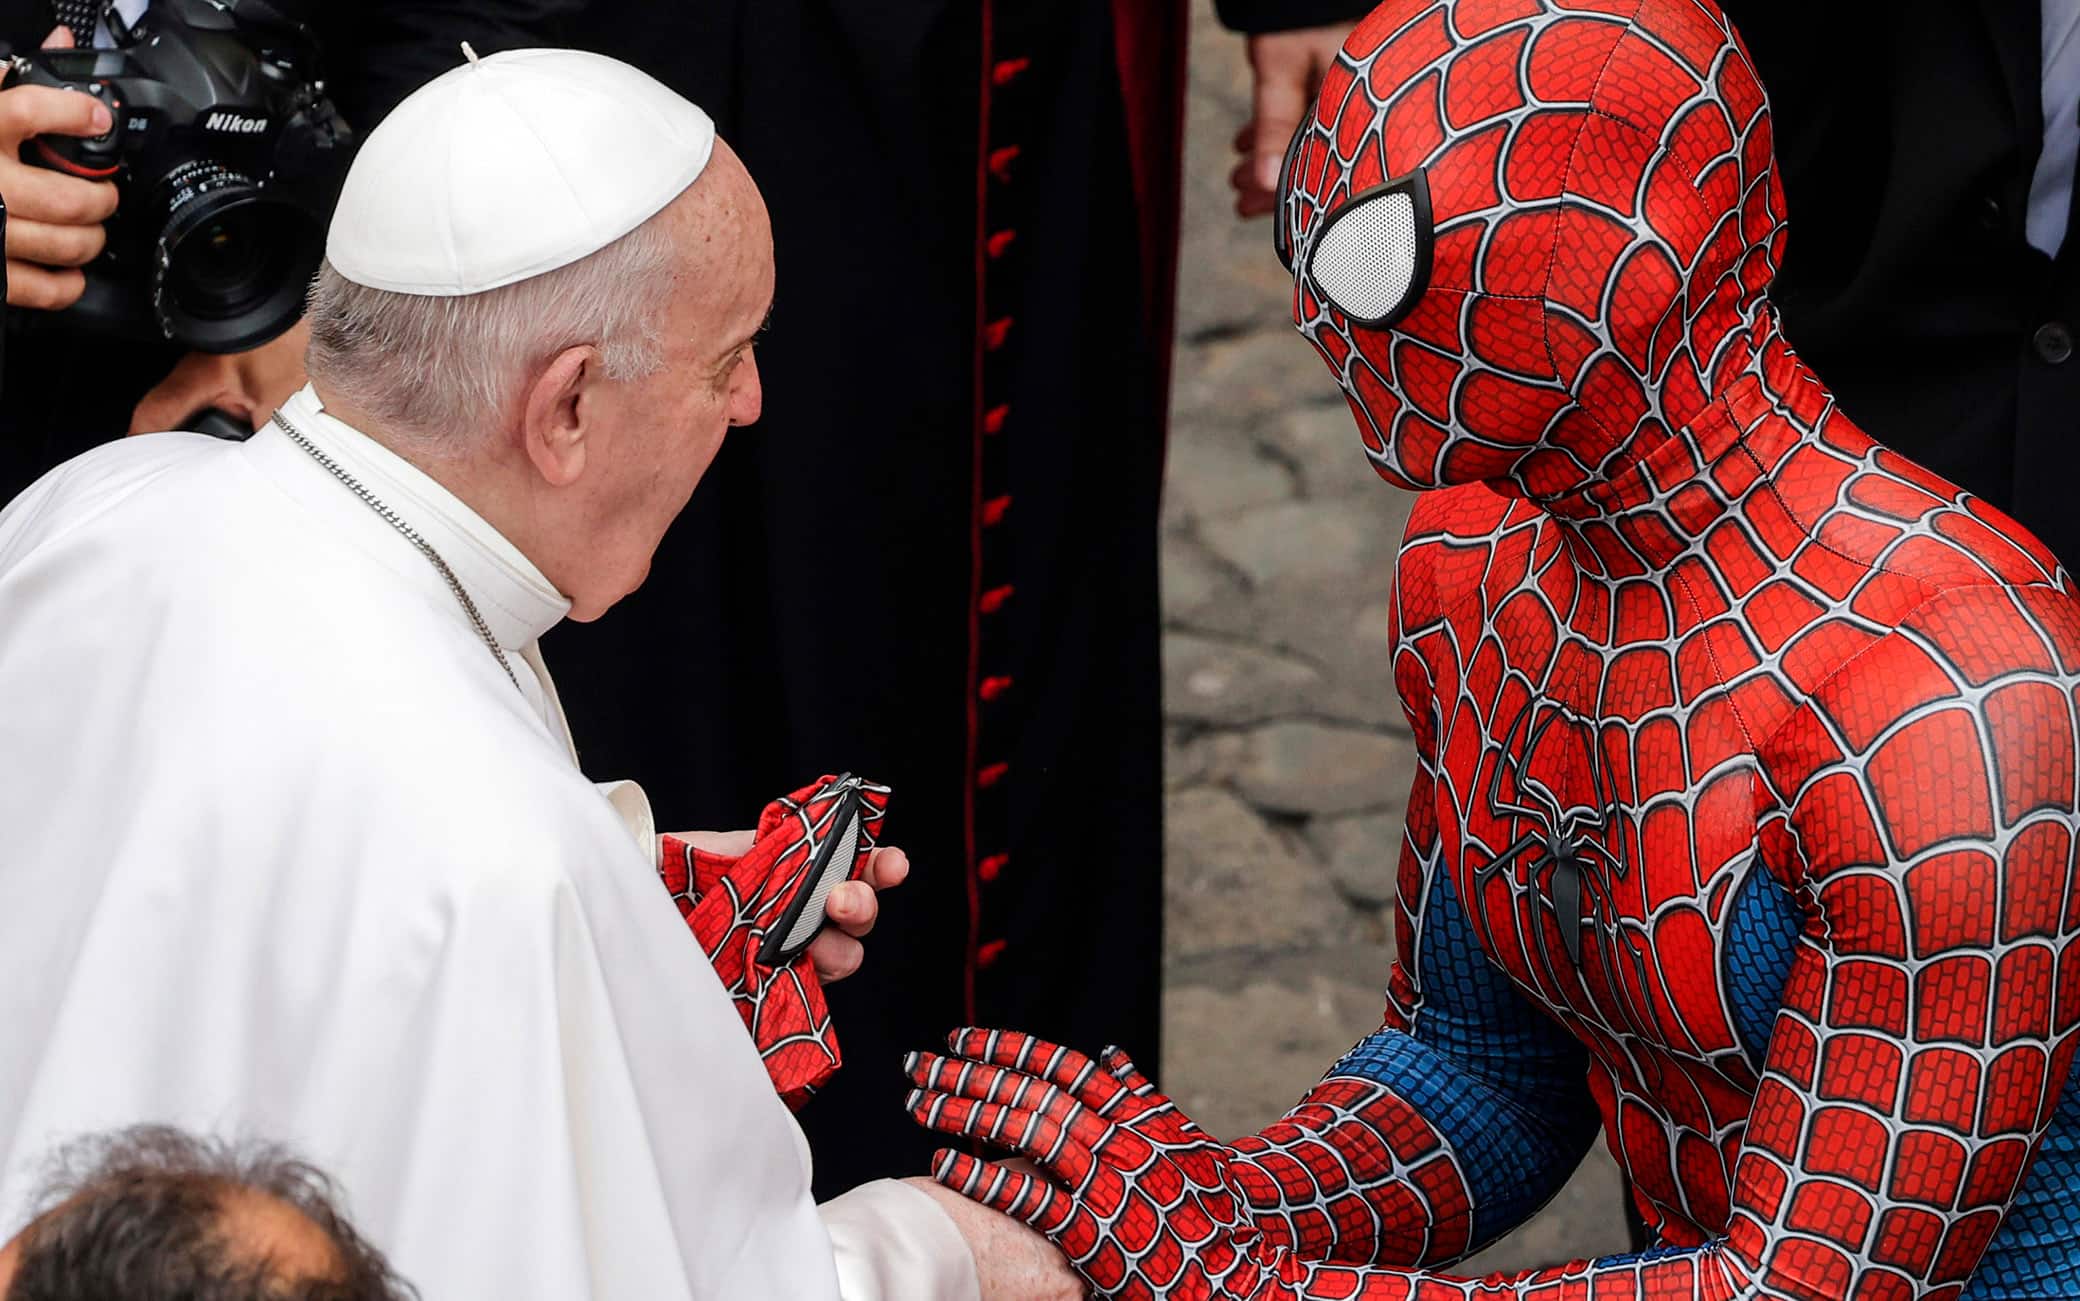 Ragazzo vestito da Spider-Man all'Udienza del Papa in Vaticano. VIDEO